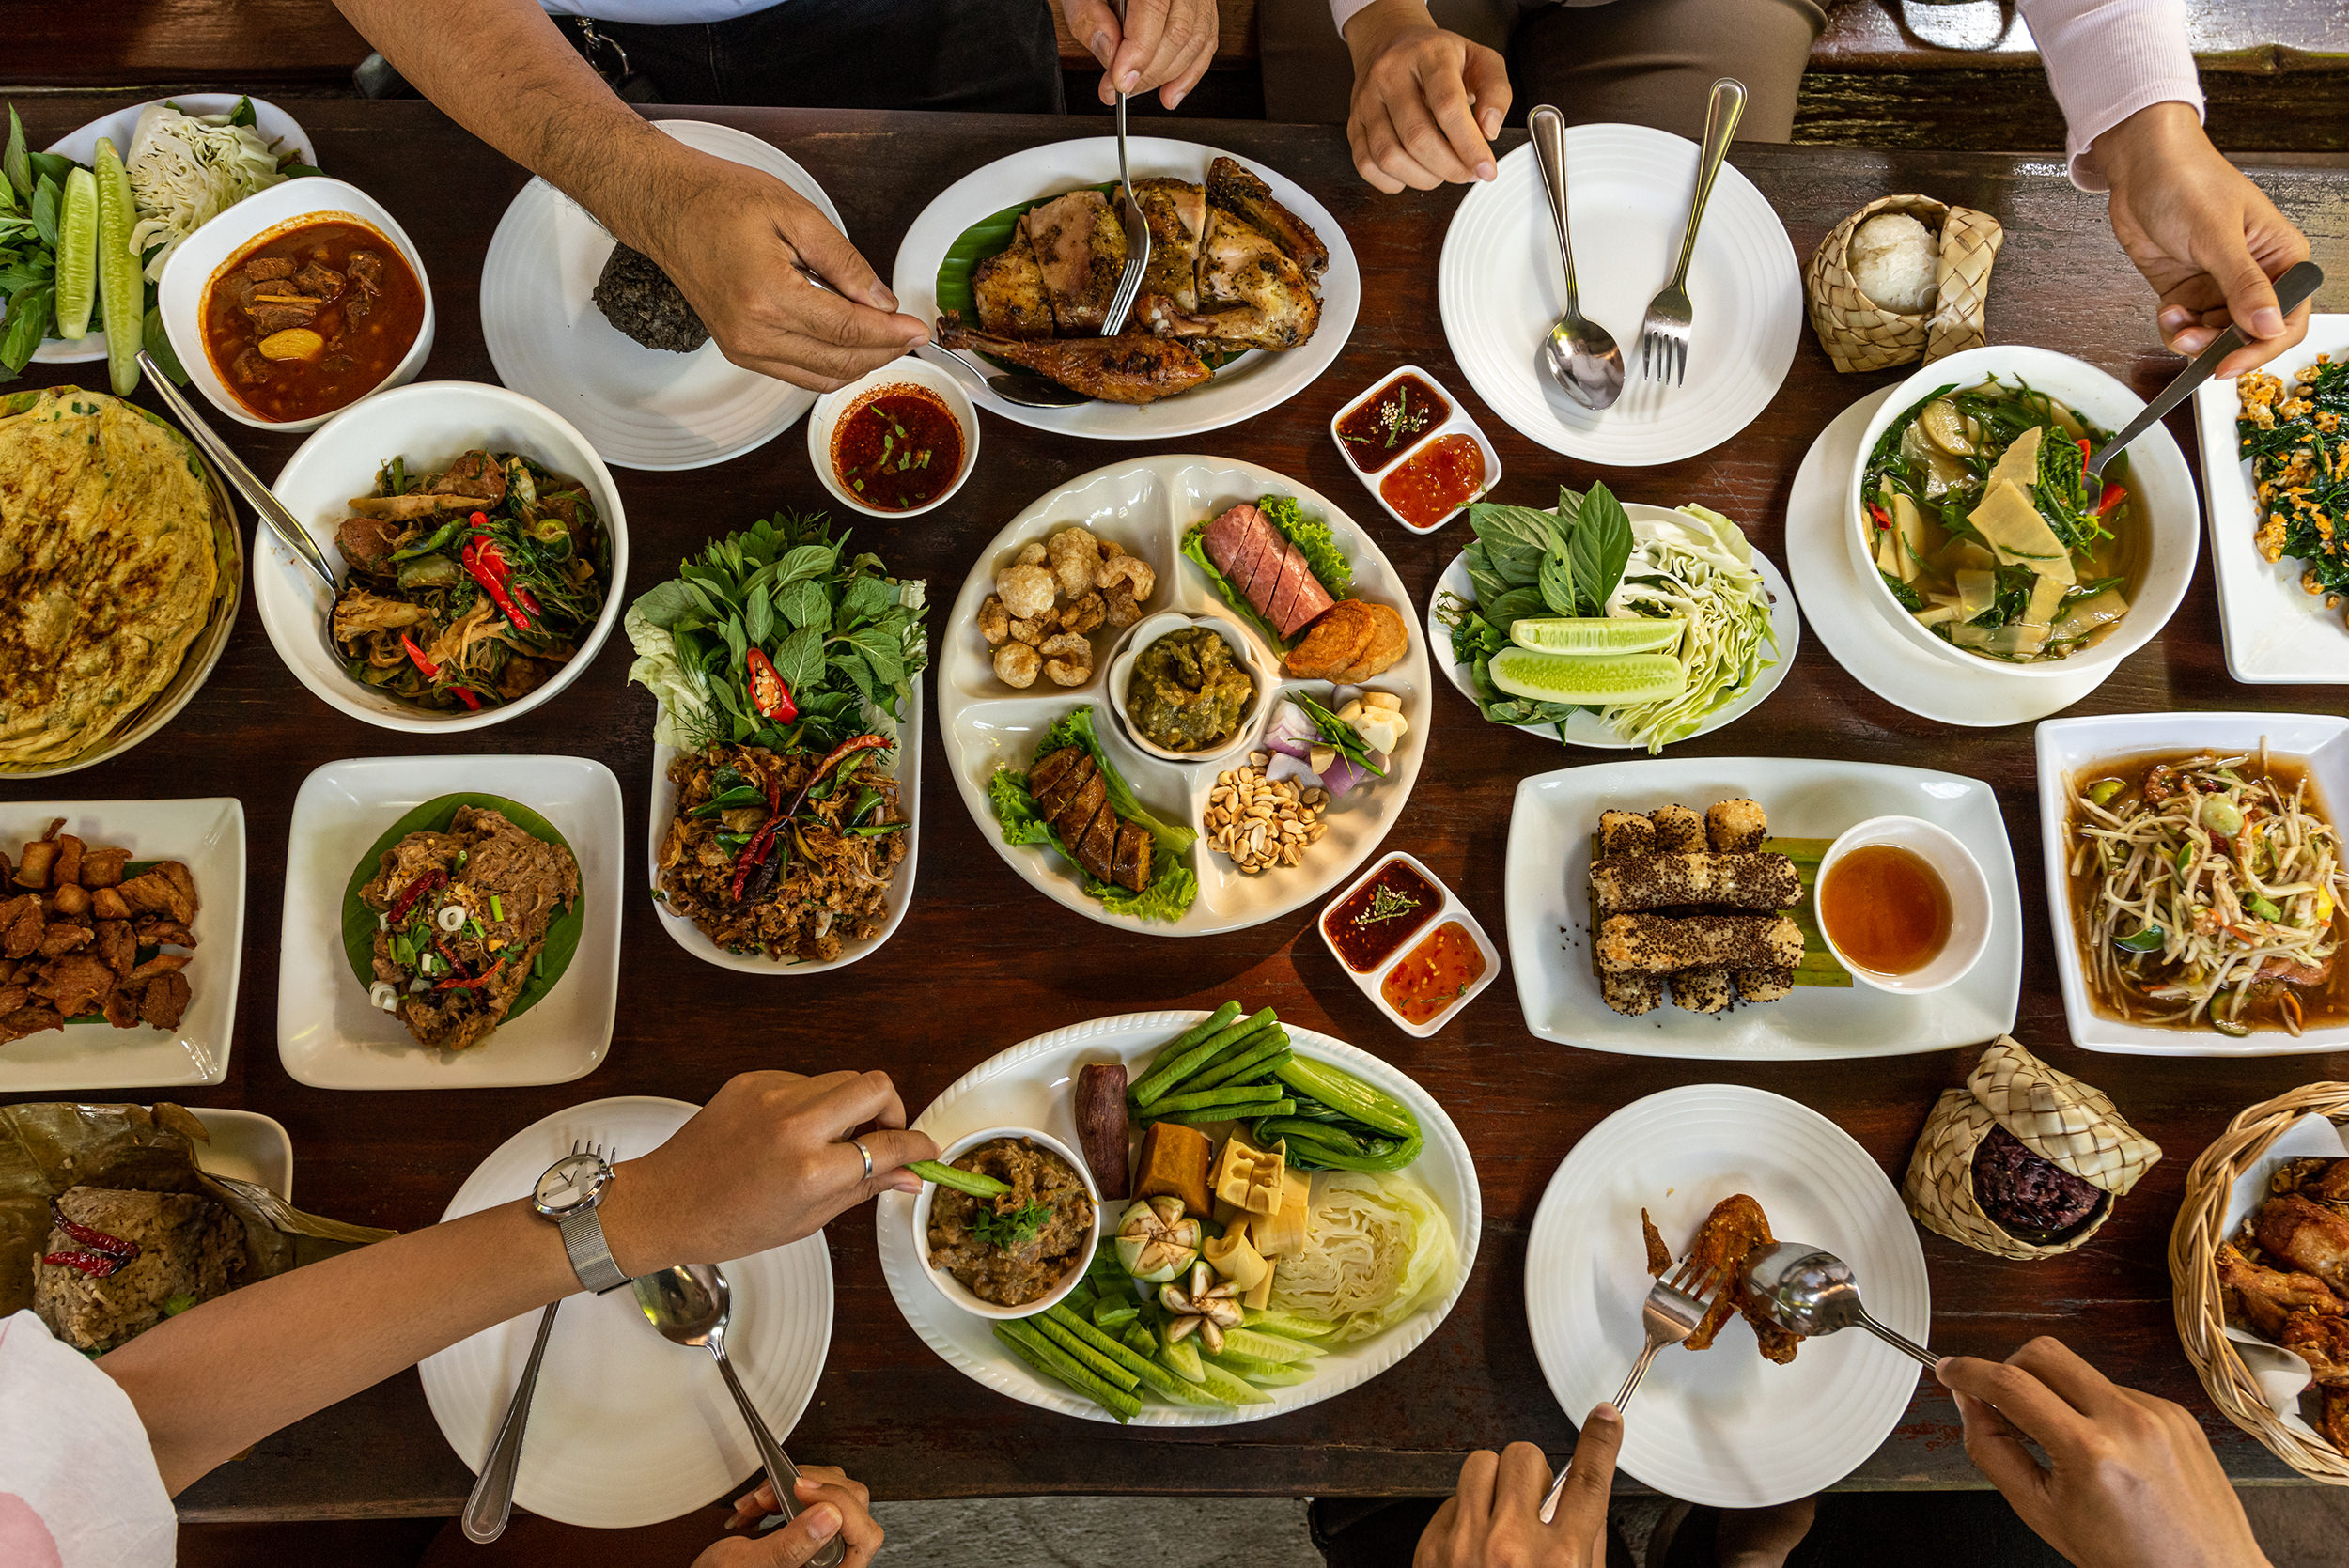 Pad thaï faible en calories, riche en protéines